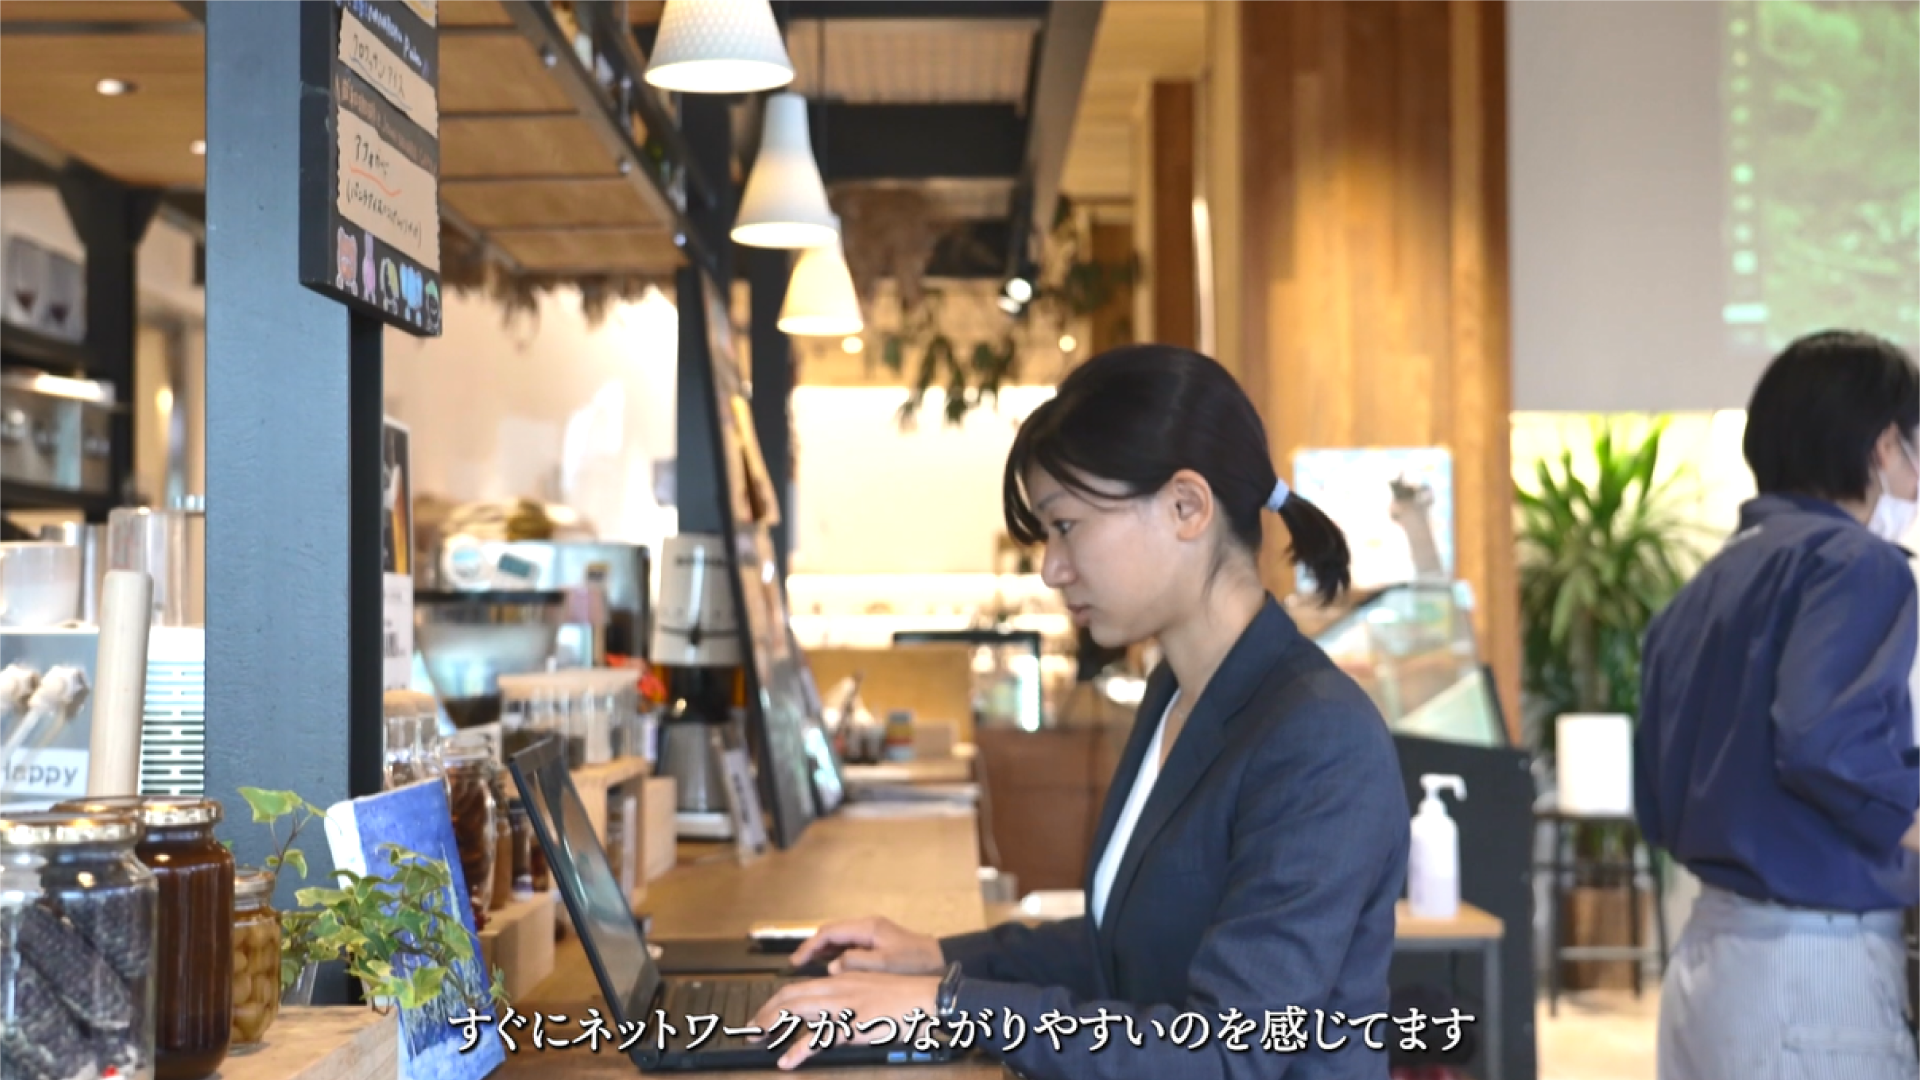 職場のカフェで作業中の中村さん